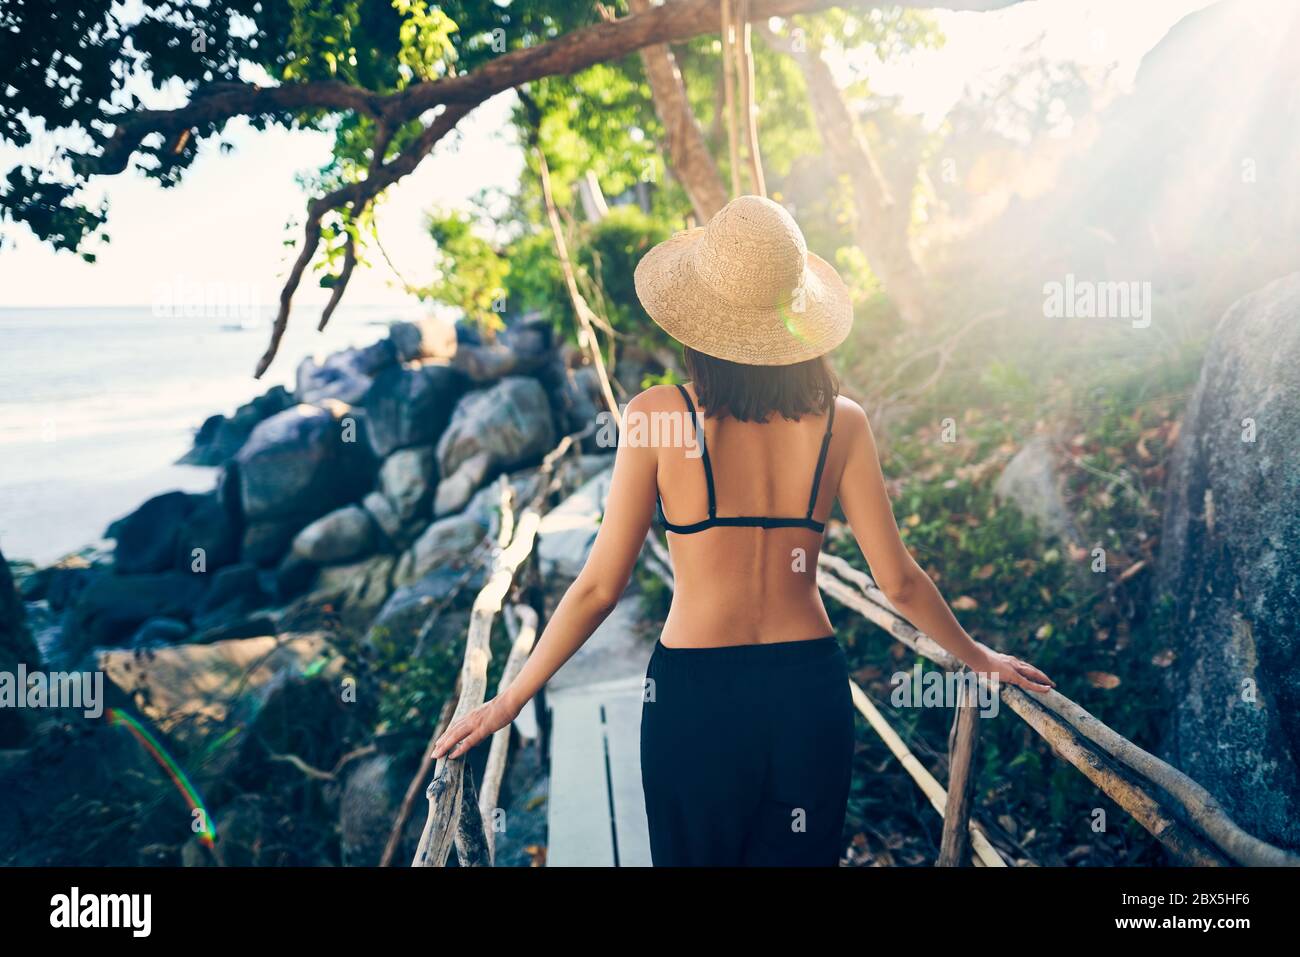 Vue arrière de la jeune femme en chapeau de paille marchant sur un pont en bois dans une île tropicale avec rétroéclairage. Vacances, concept de voyage Banque D'Images